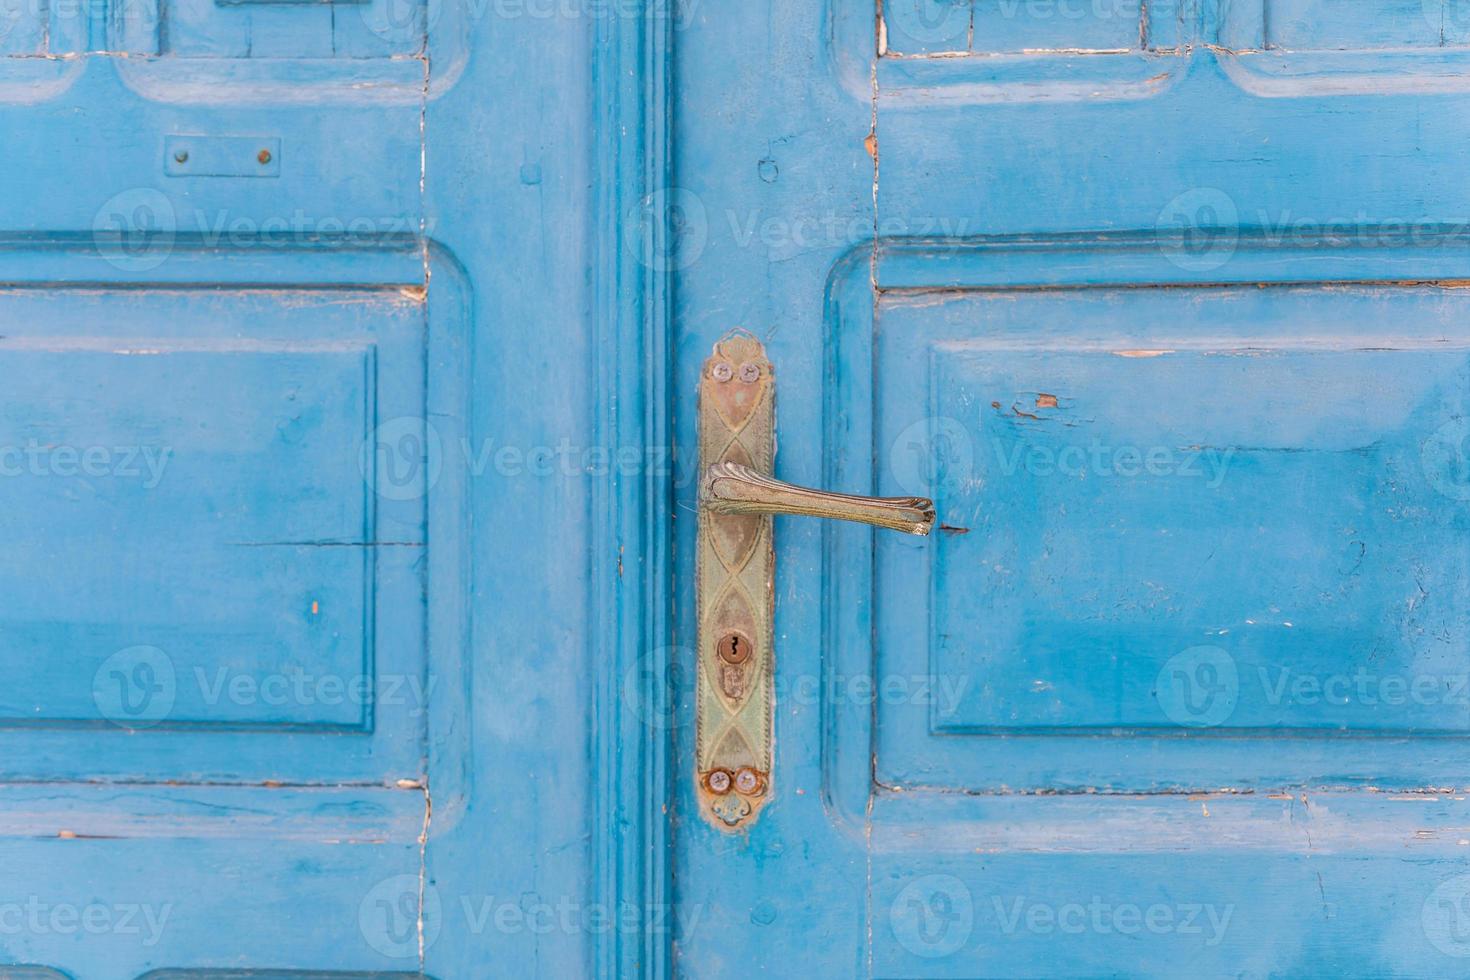 antigua puerta azul rústica descolorida en la isla de santorini grecia, colores tradicionales la luz del sol se desvanece turismo islas griegas foto